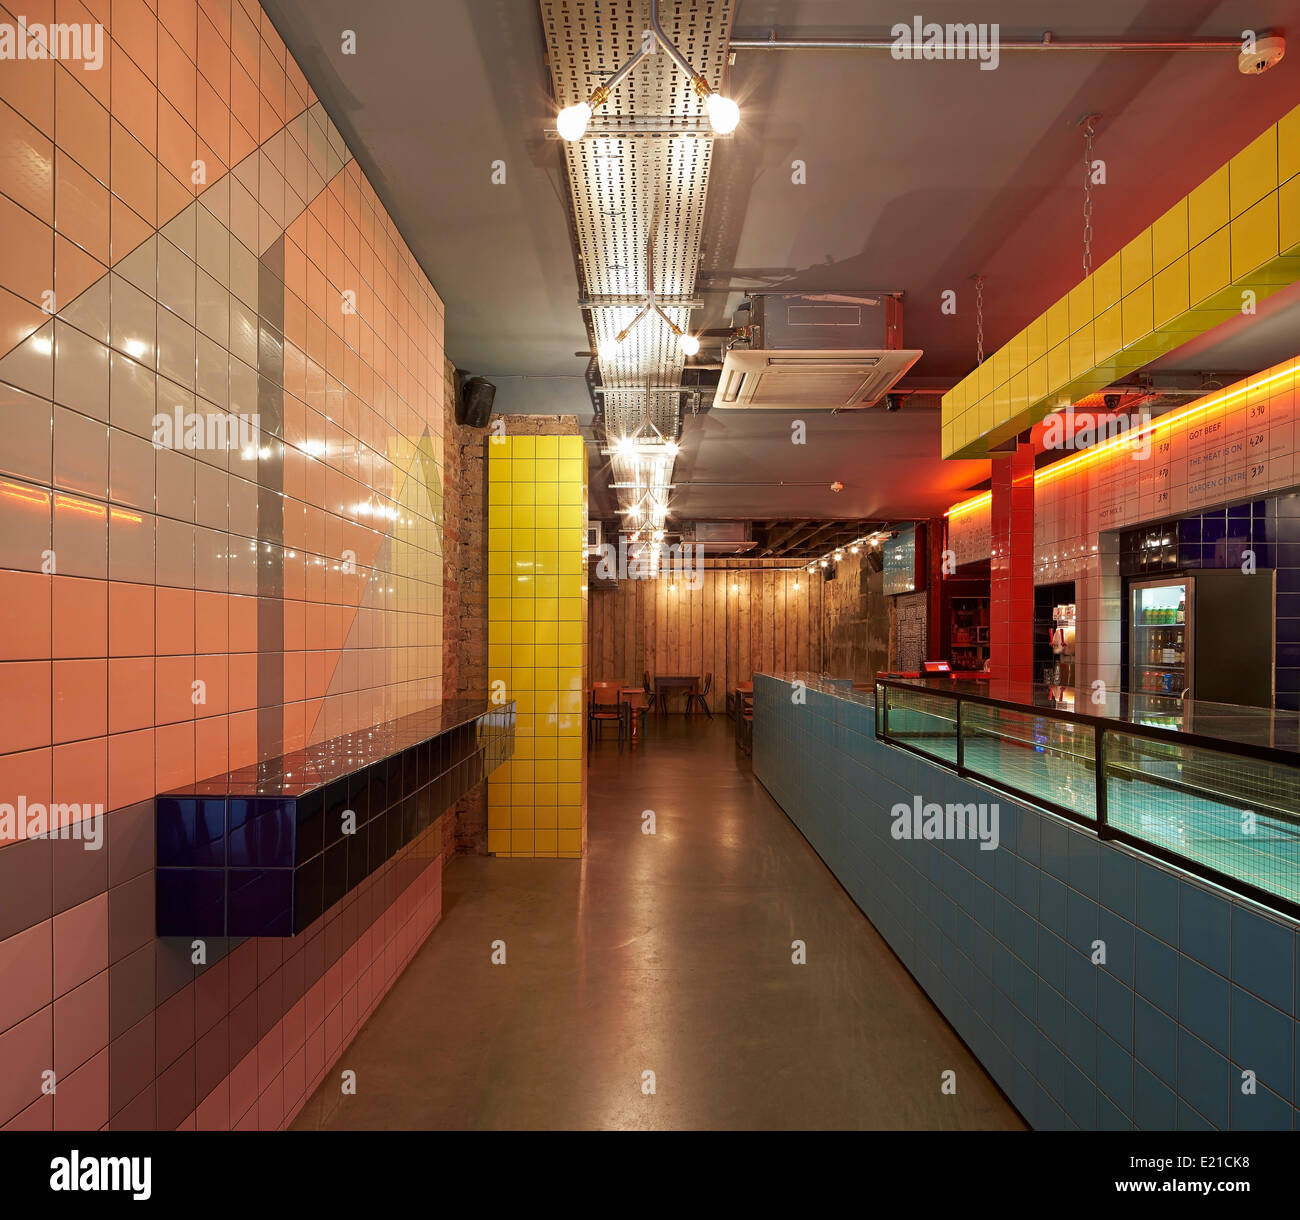 Voodoo-Strahlen, London, Vereinigtes Königreich. Architekt: Gundry & Ducker, 2013. Gekachelten Innenraum mit langen Pizza Theke. Stockfoto